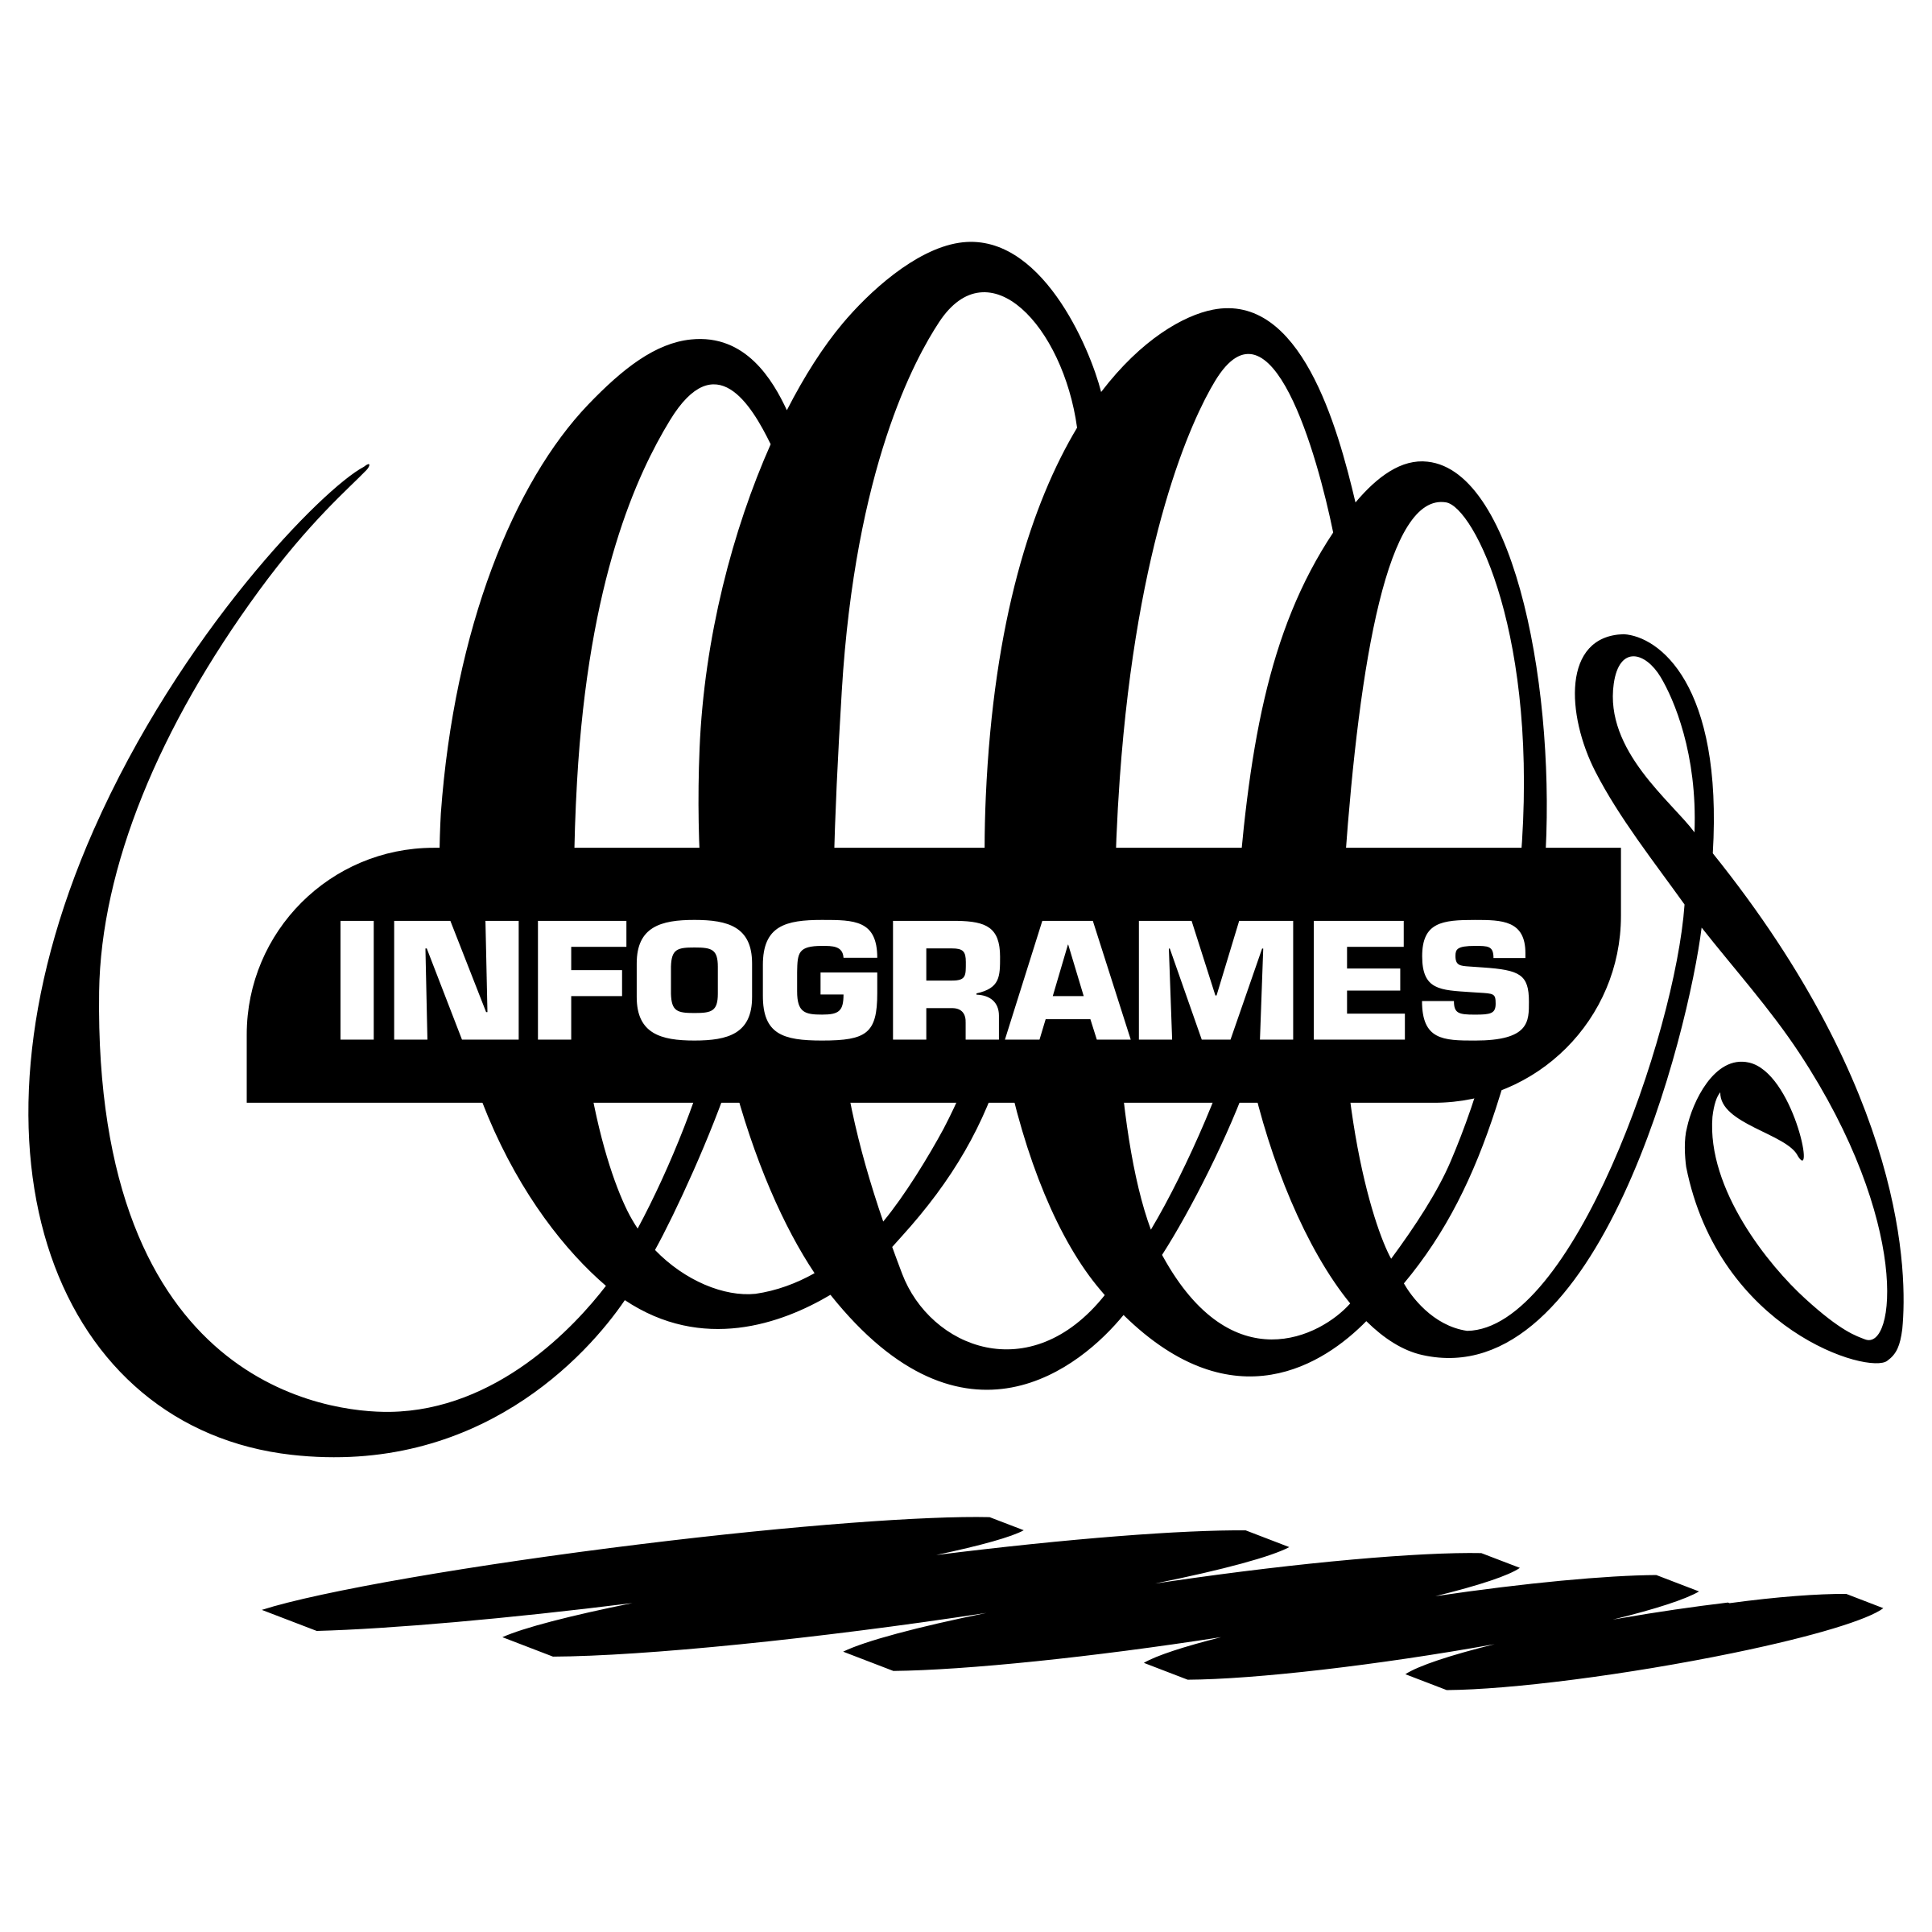 Infogrames Logo - Infogrames Logo PNG Transparent & SVG Vector